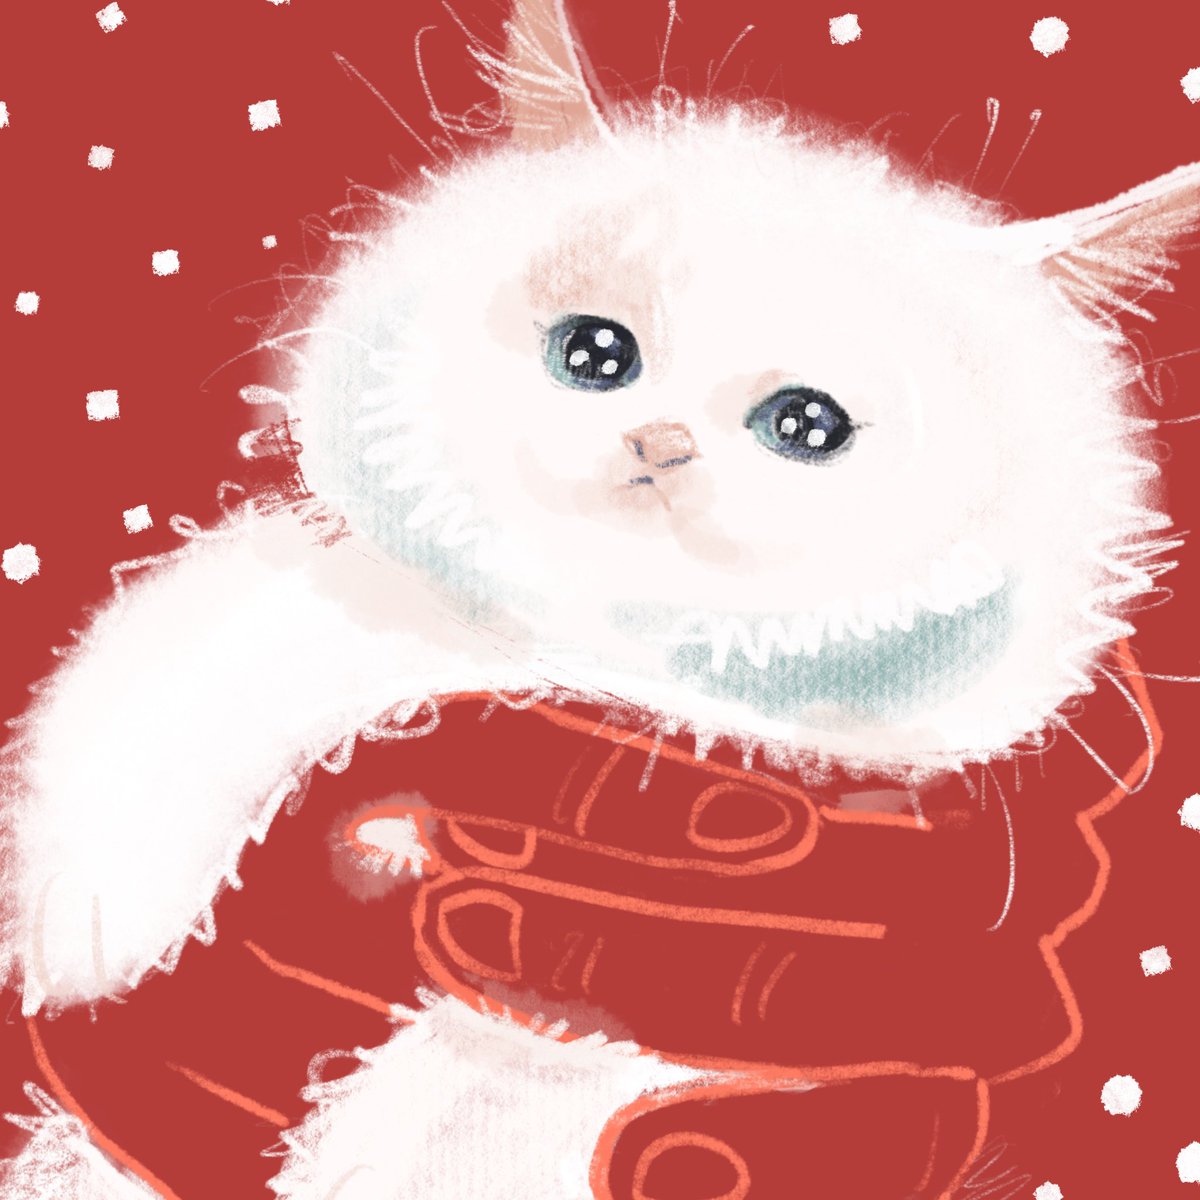 「長崎の救出された猫 」|谷口 菜津子のイラスト